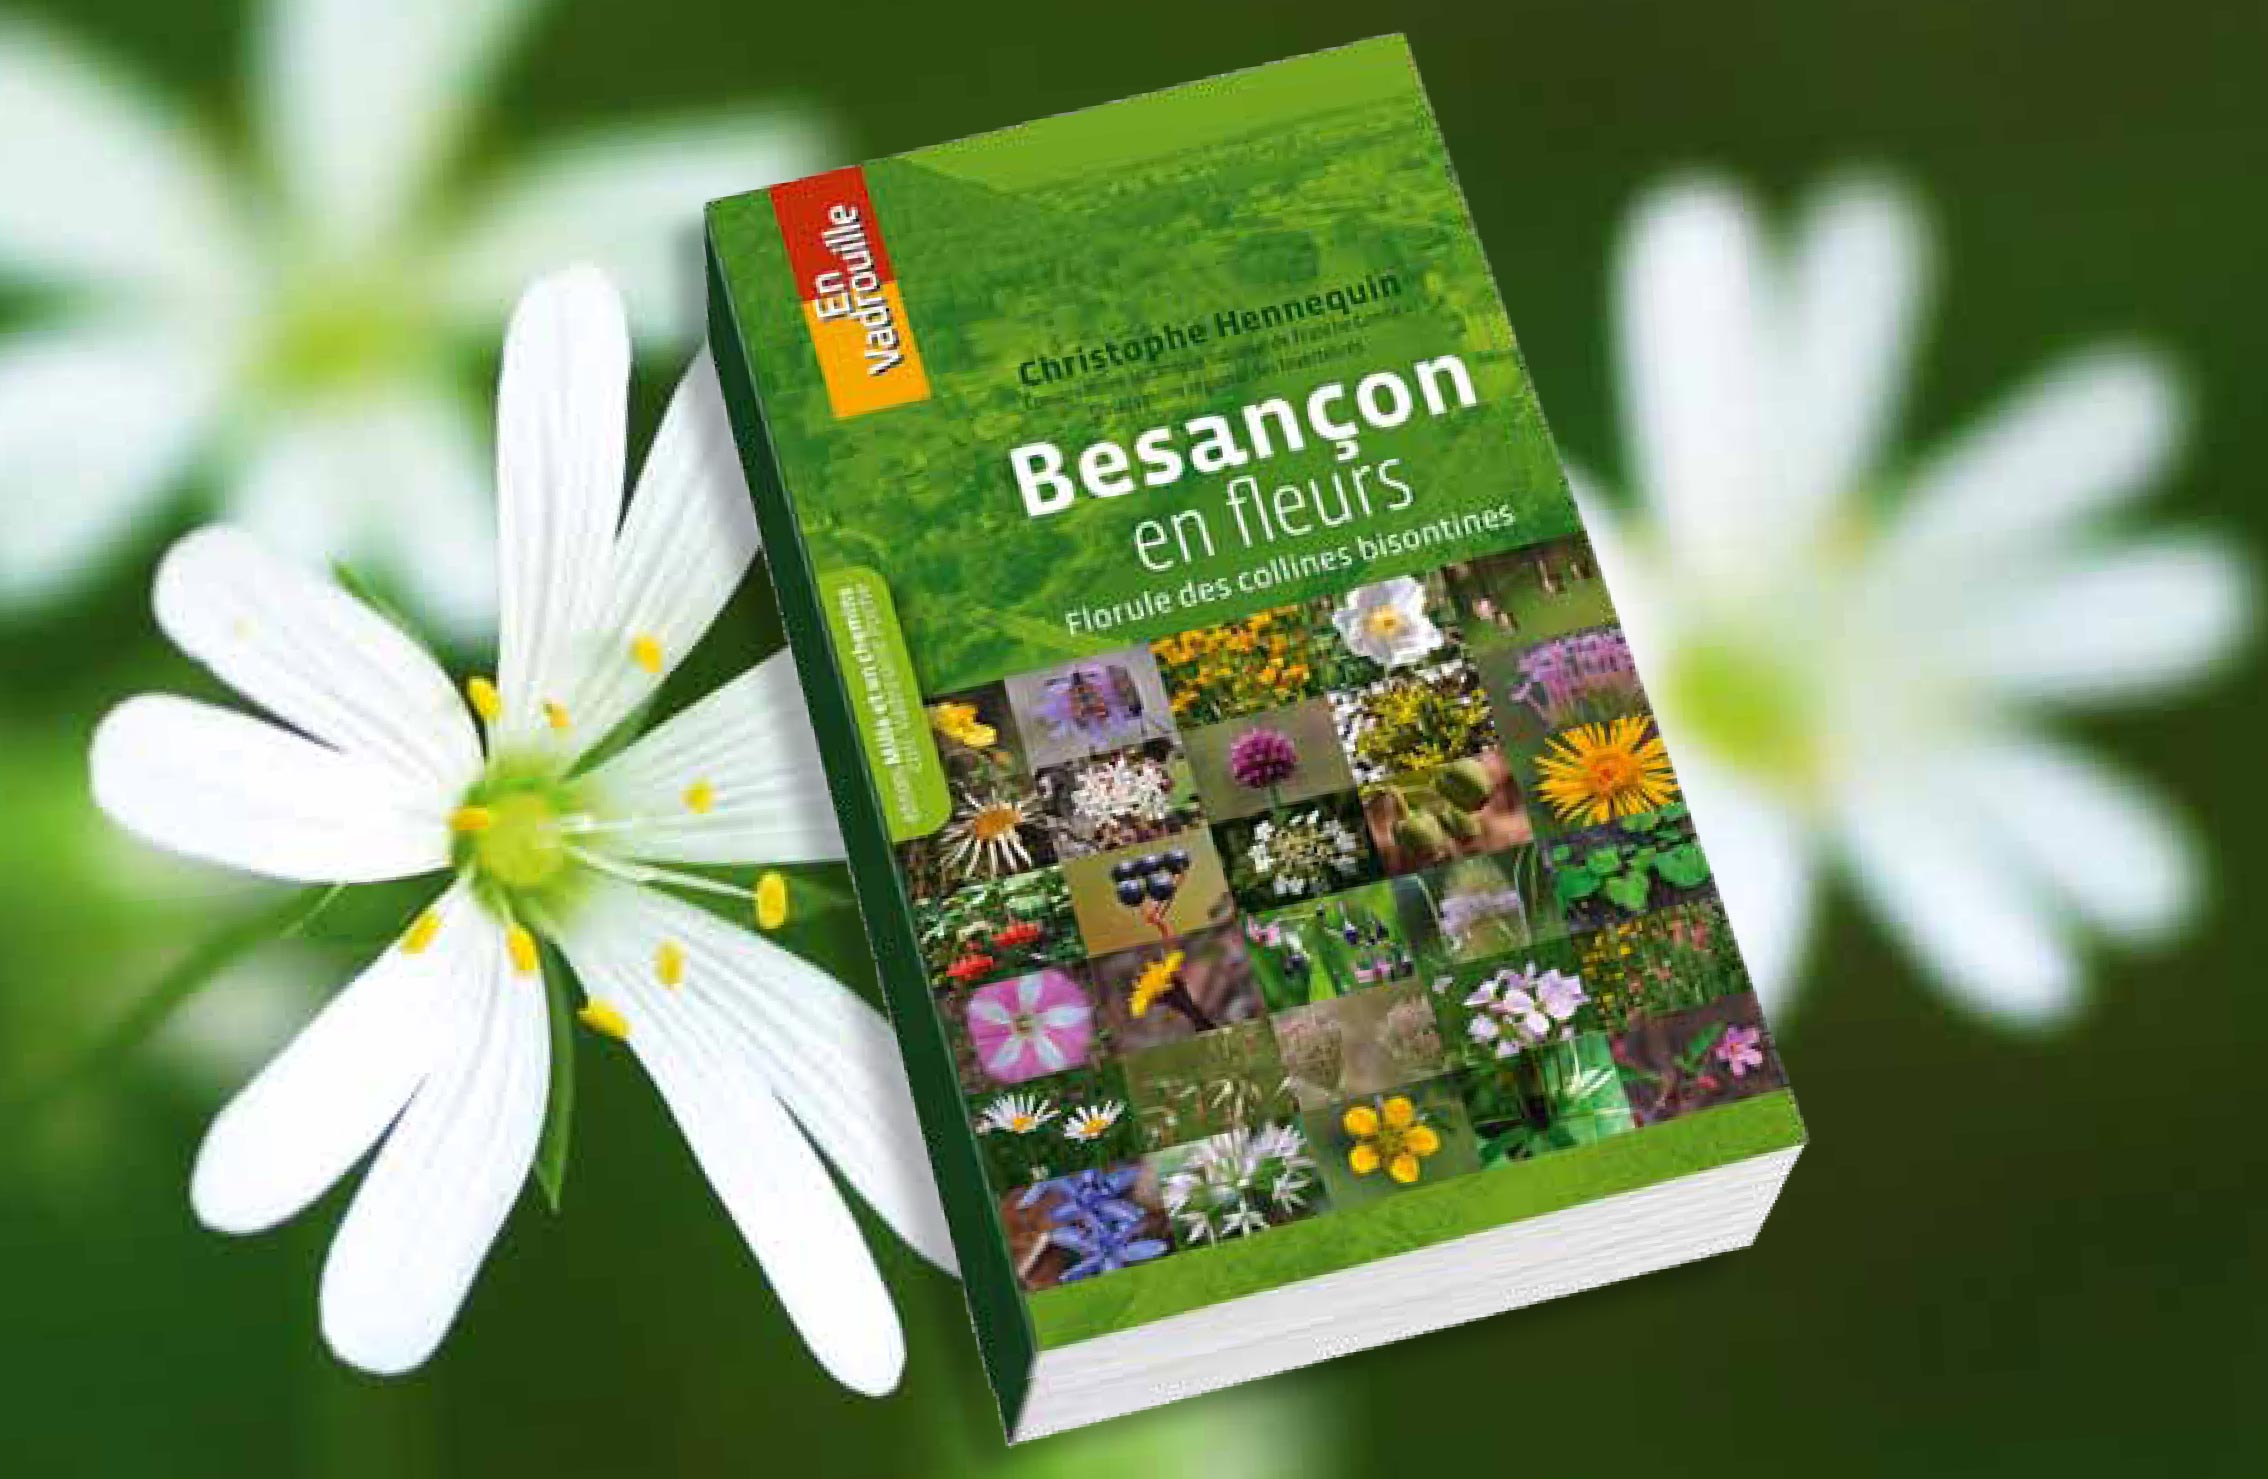 Vadrouilles botaniques avec la Florule de Besançon